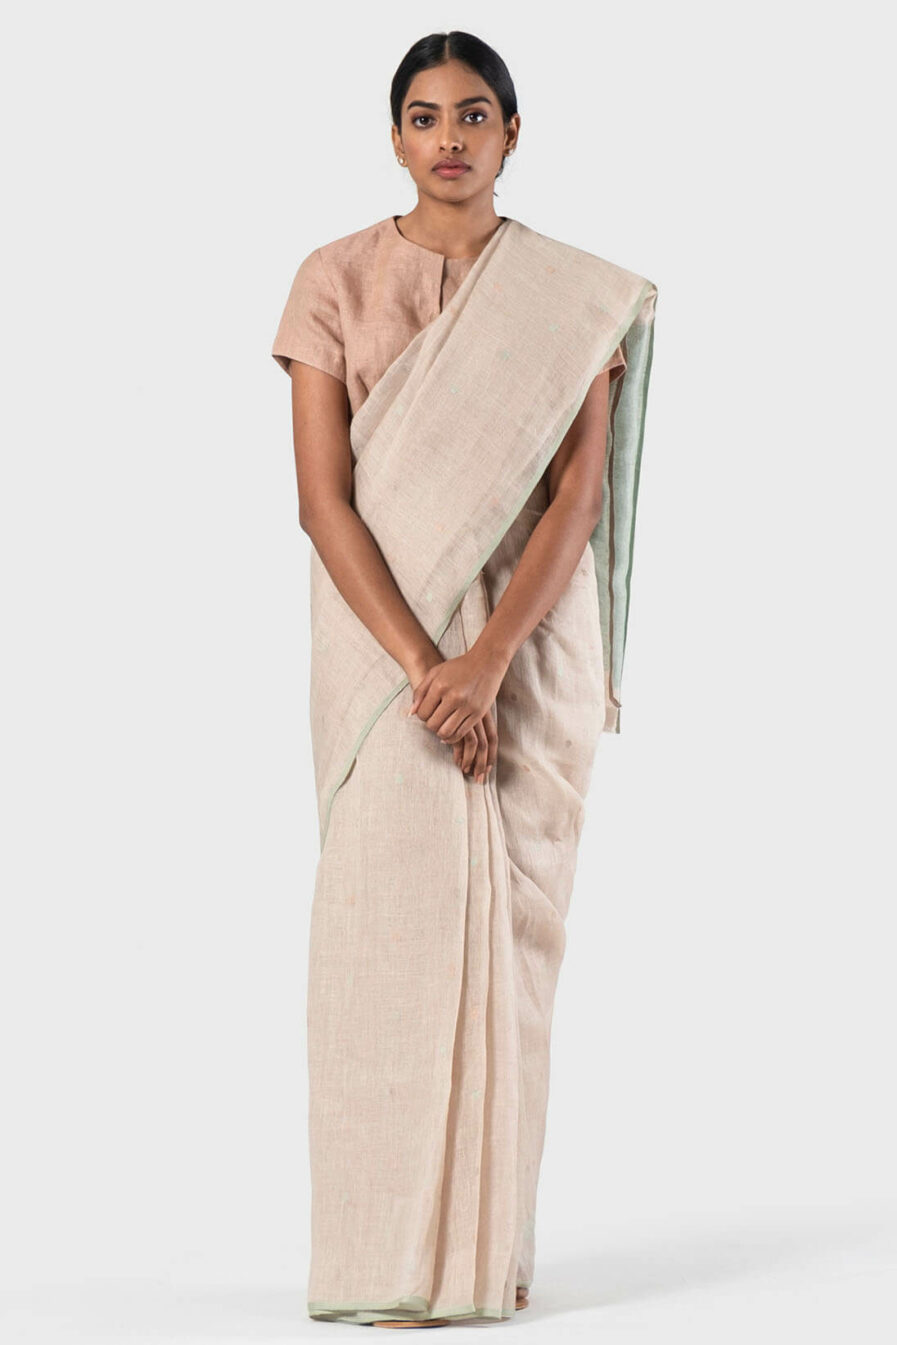 Anavila Natural Soft polka jamdani sari